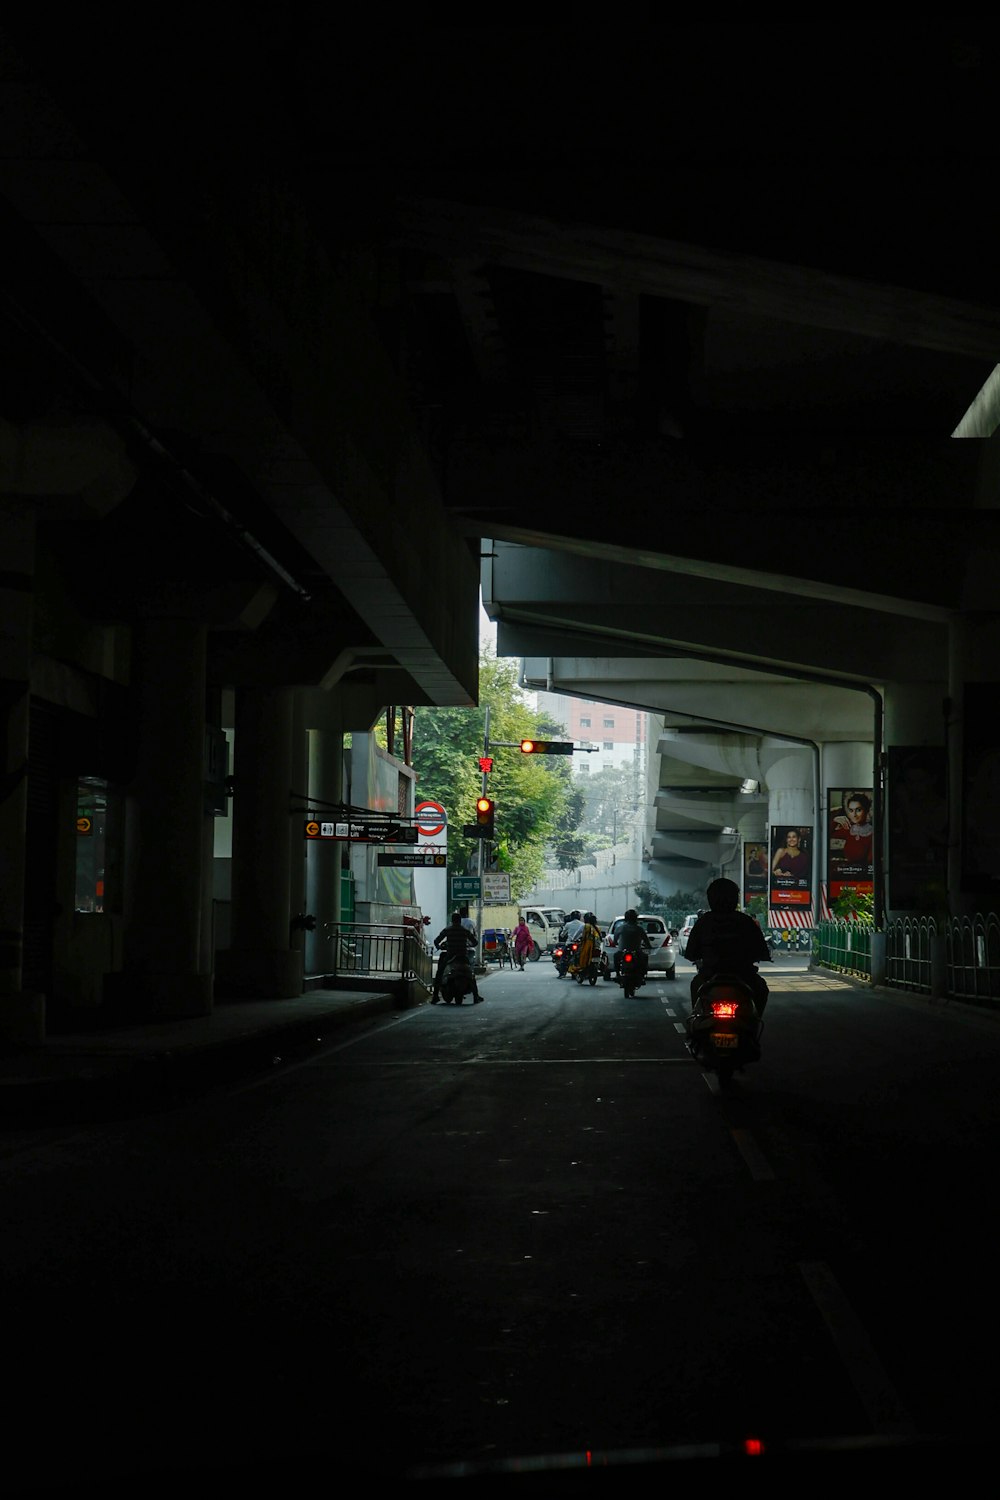 una persona conduciendo una motocicleta por una calle oscura